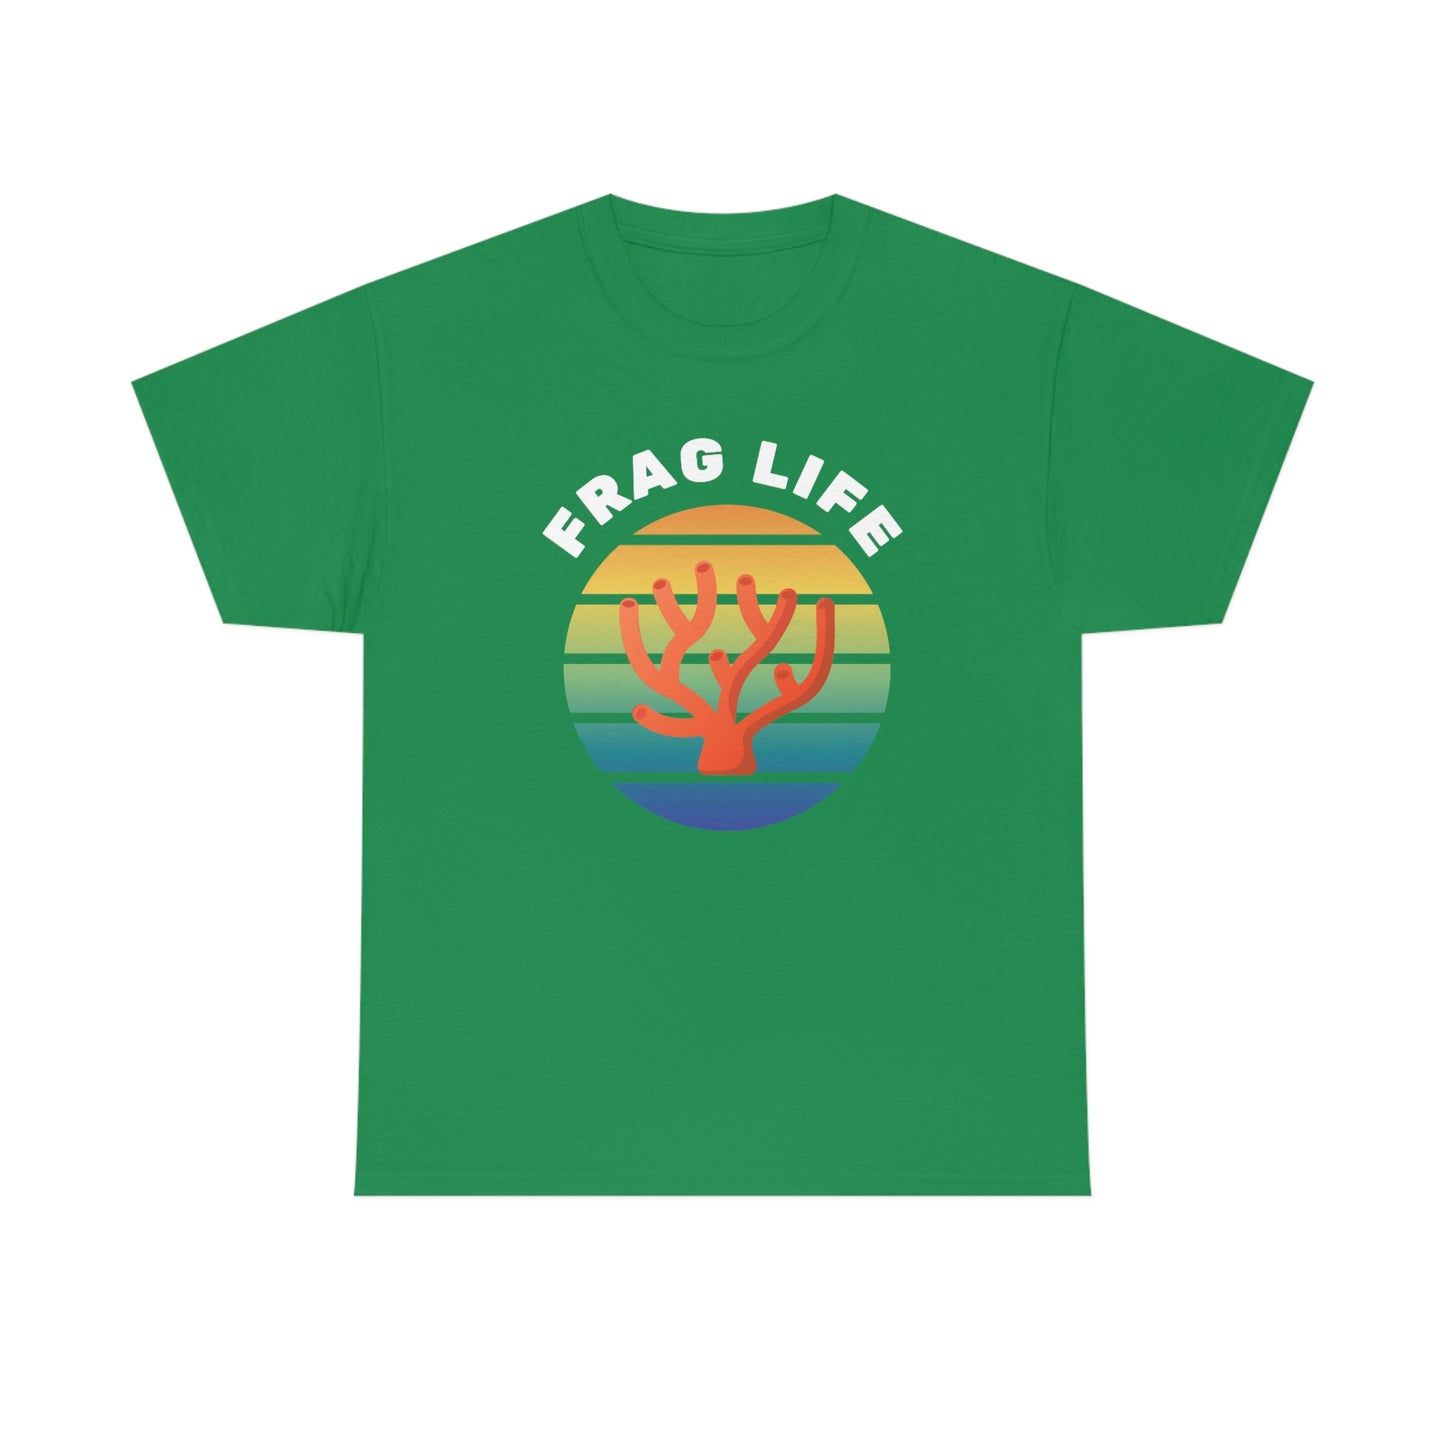 Frag Life Shirt - Reef of Clowns